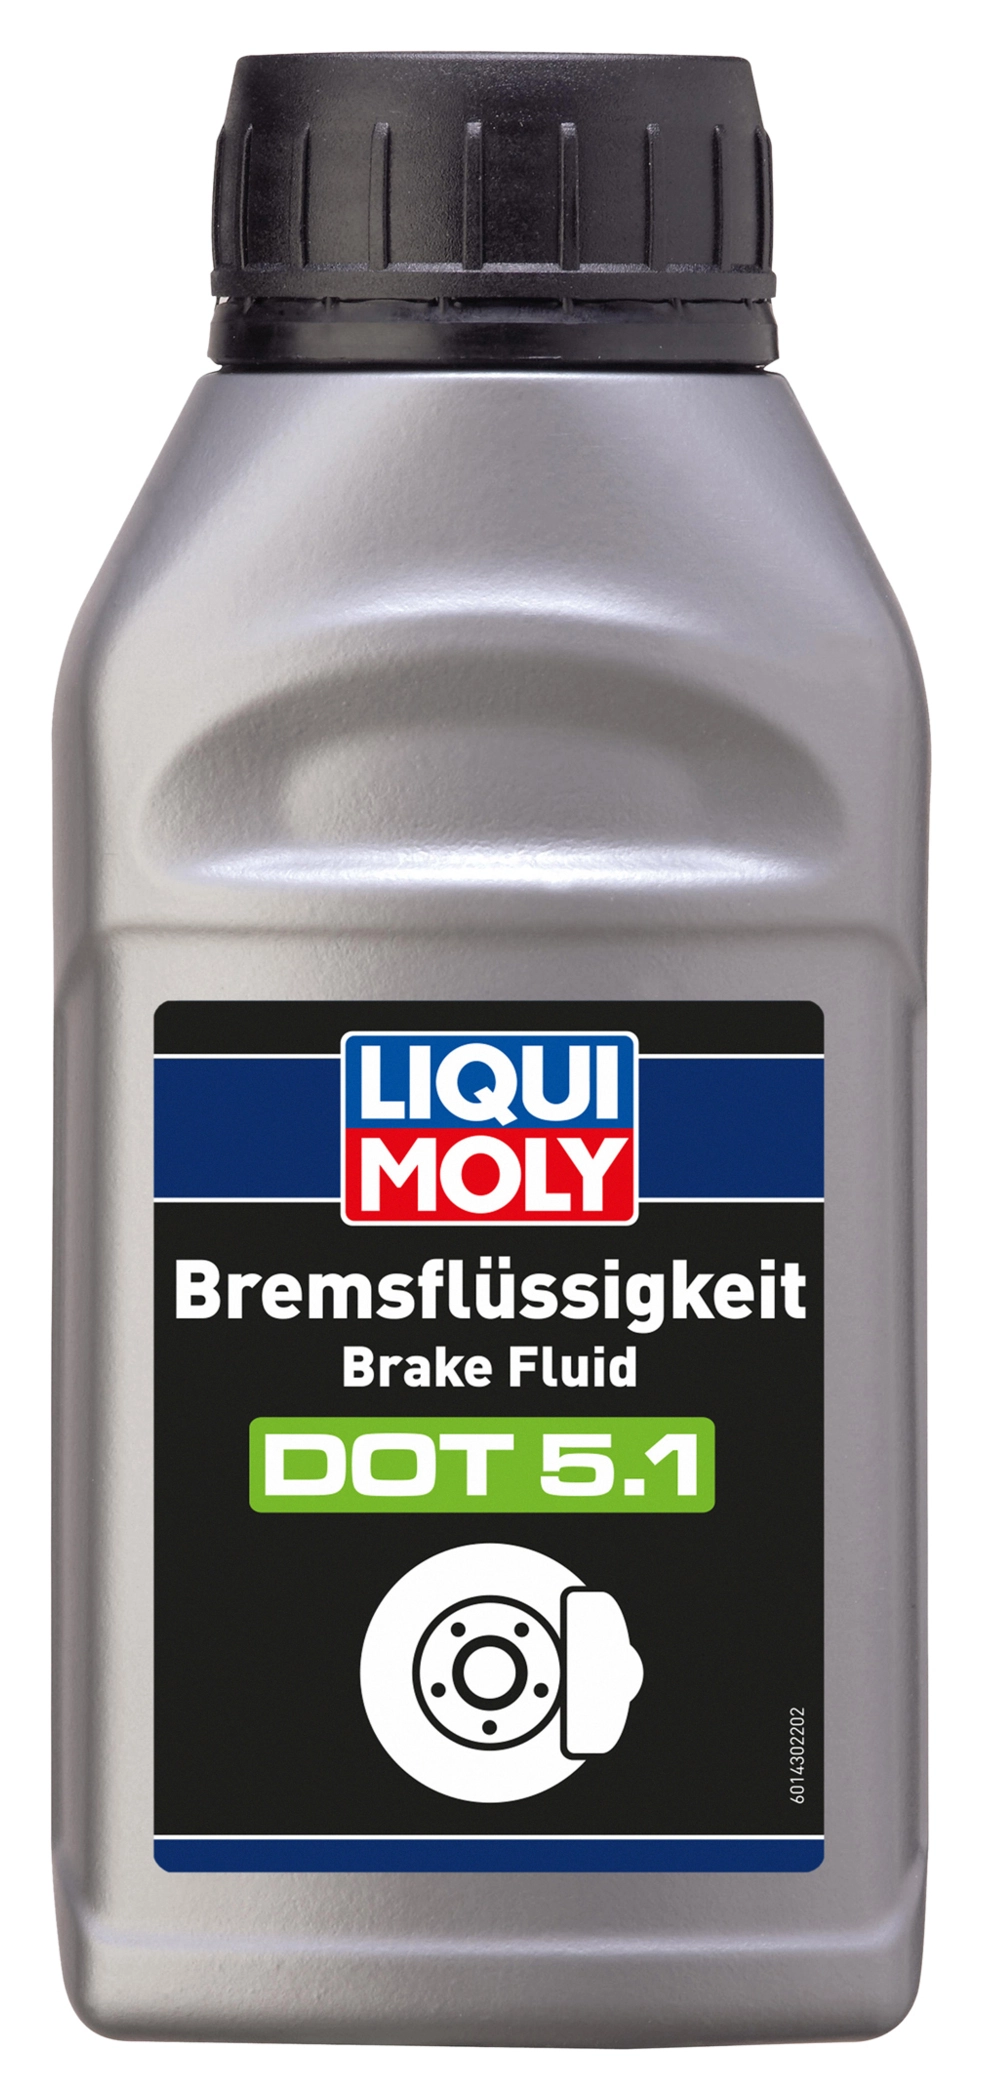 LIQUI MOLY, DOT 5.1